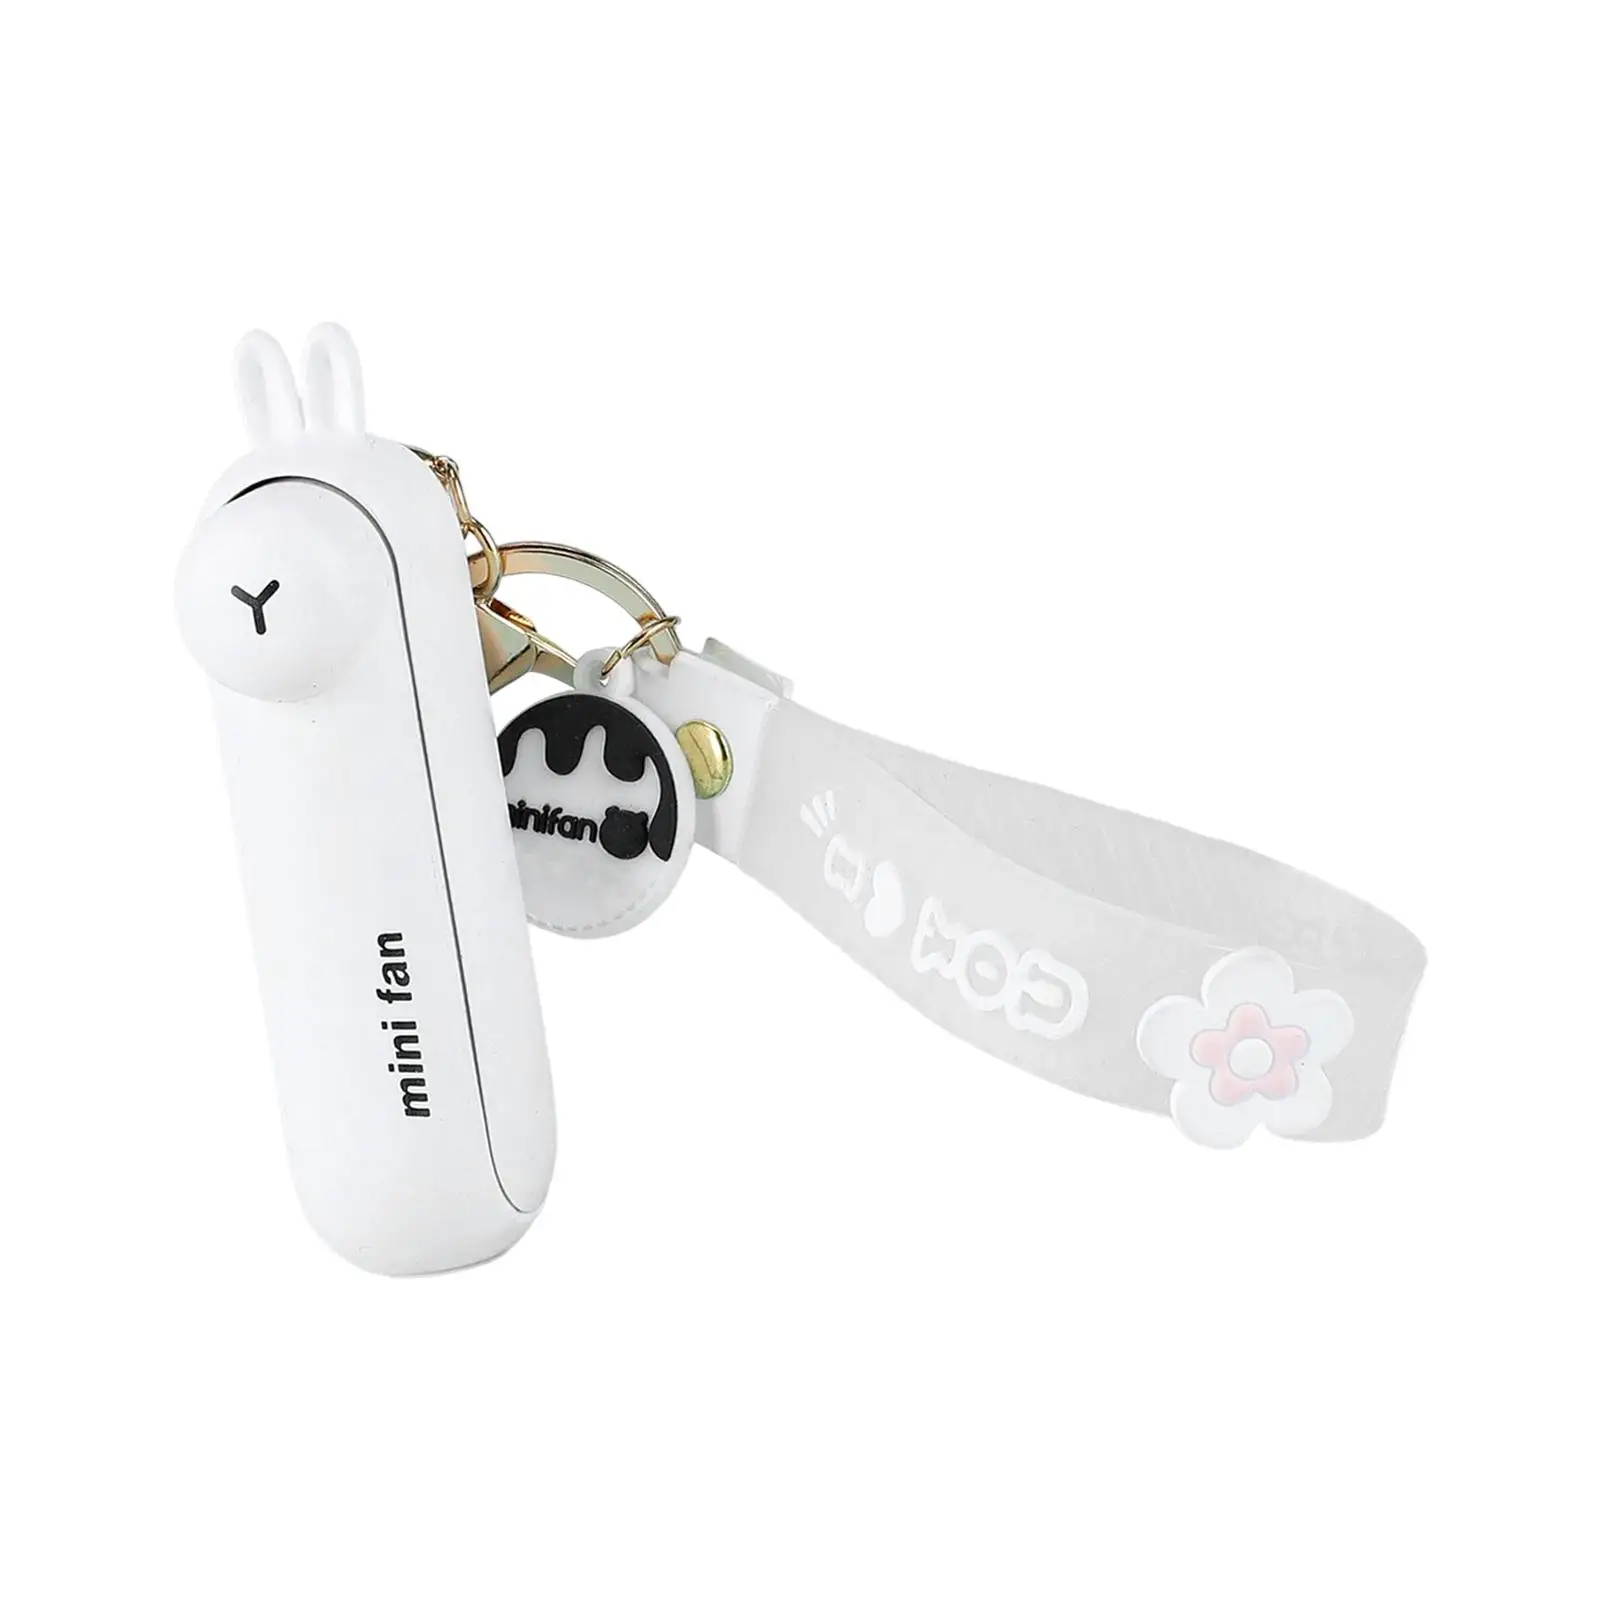 Keychain Fan Portable Mini Fan with Light USB Rechargeable Small Pocket Fan Cute Cooling Fan for Home Outdoor